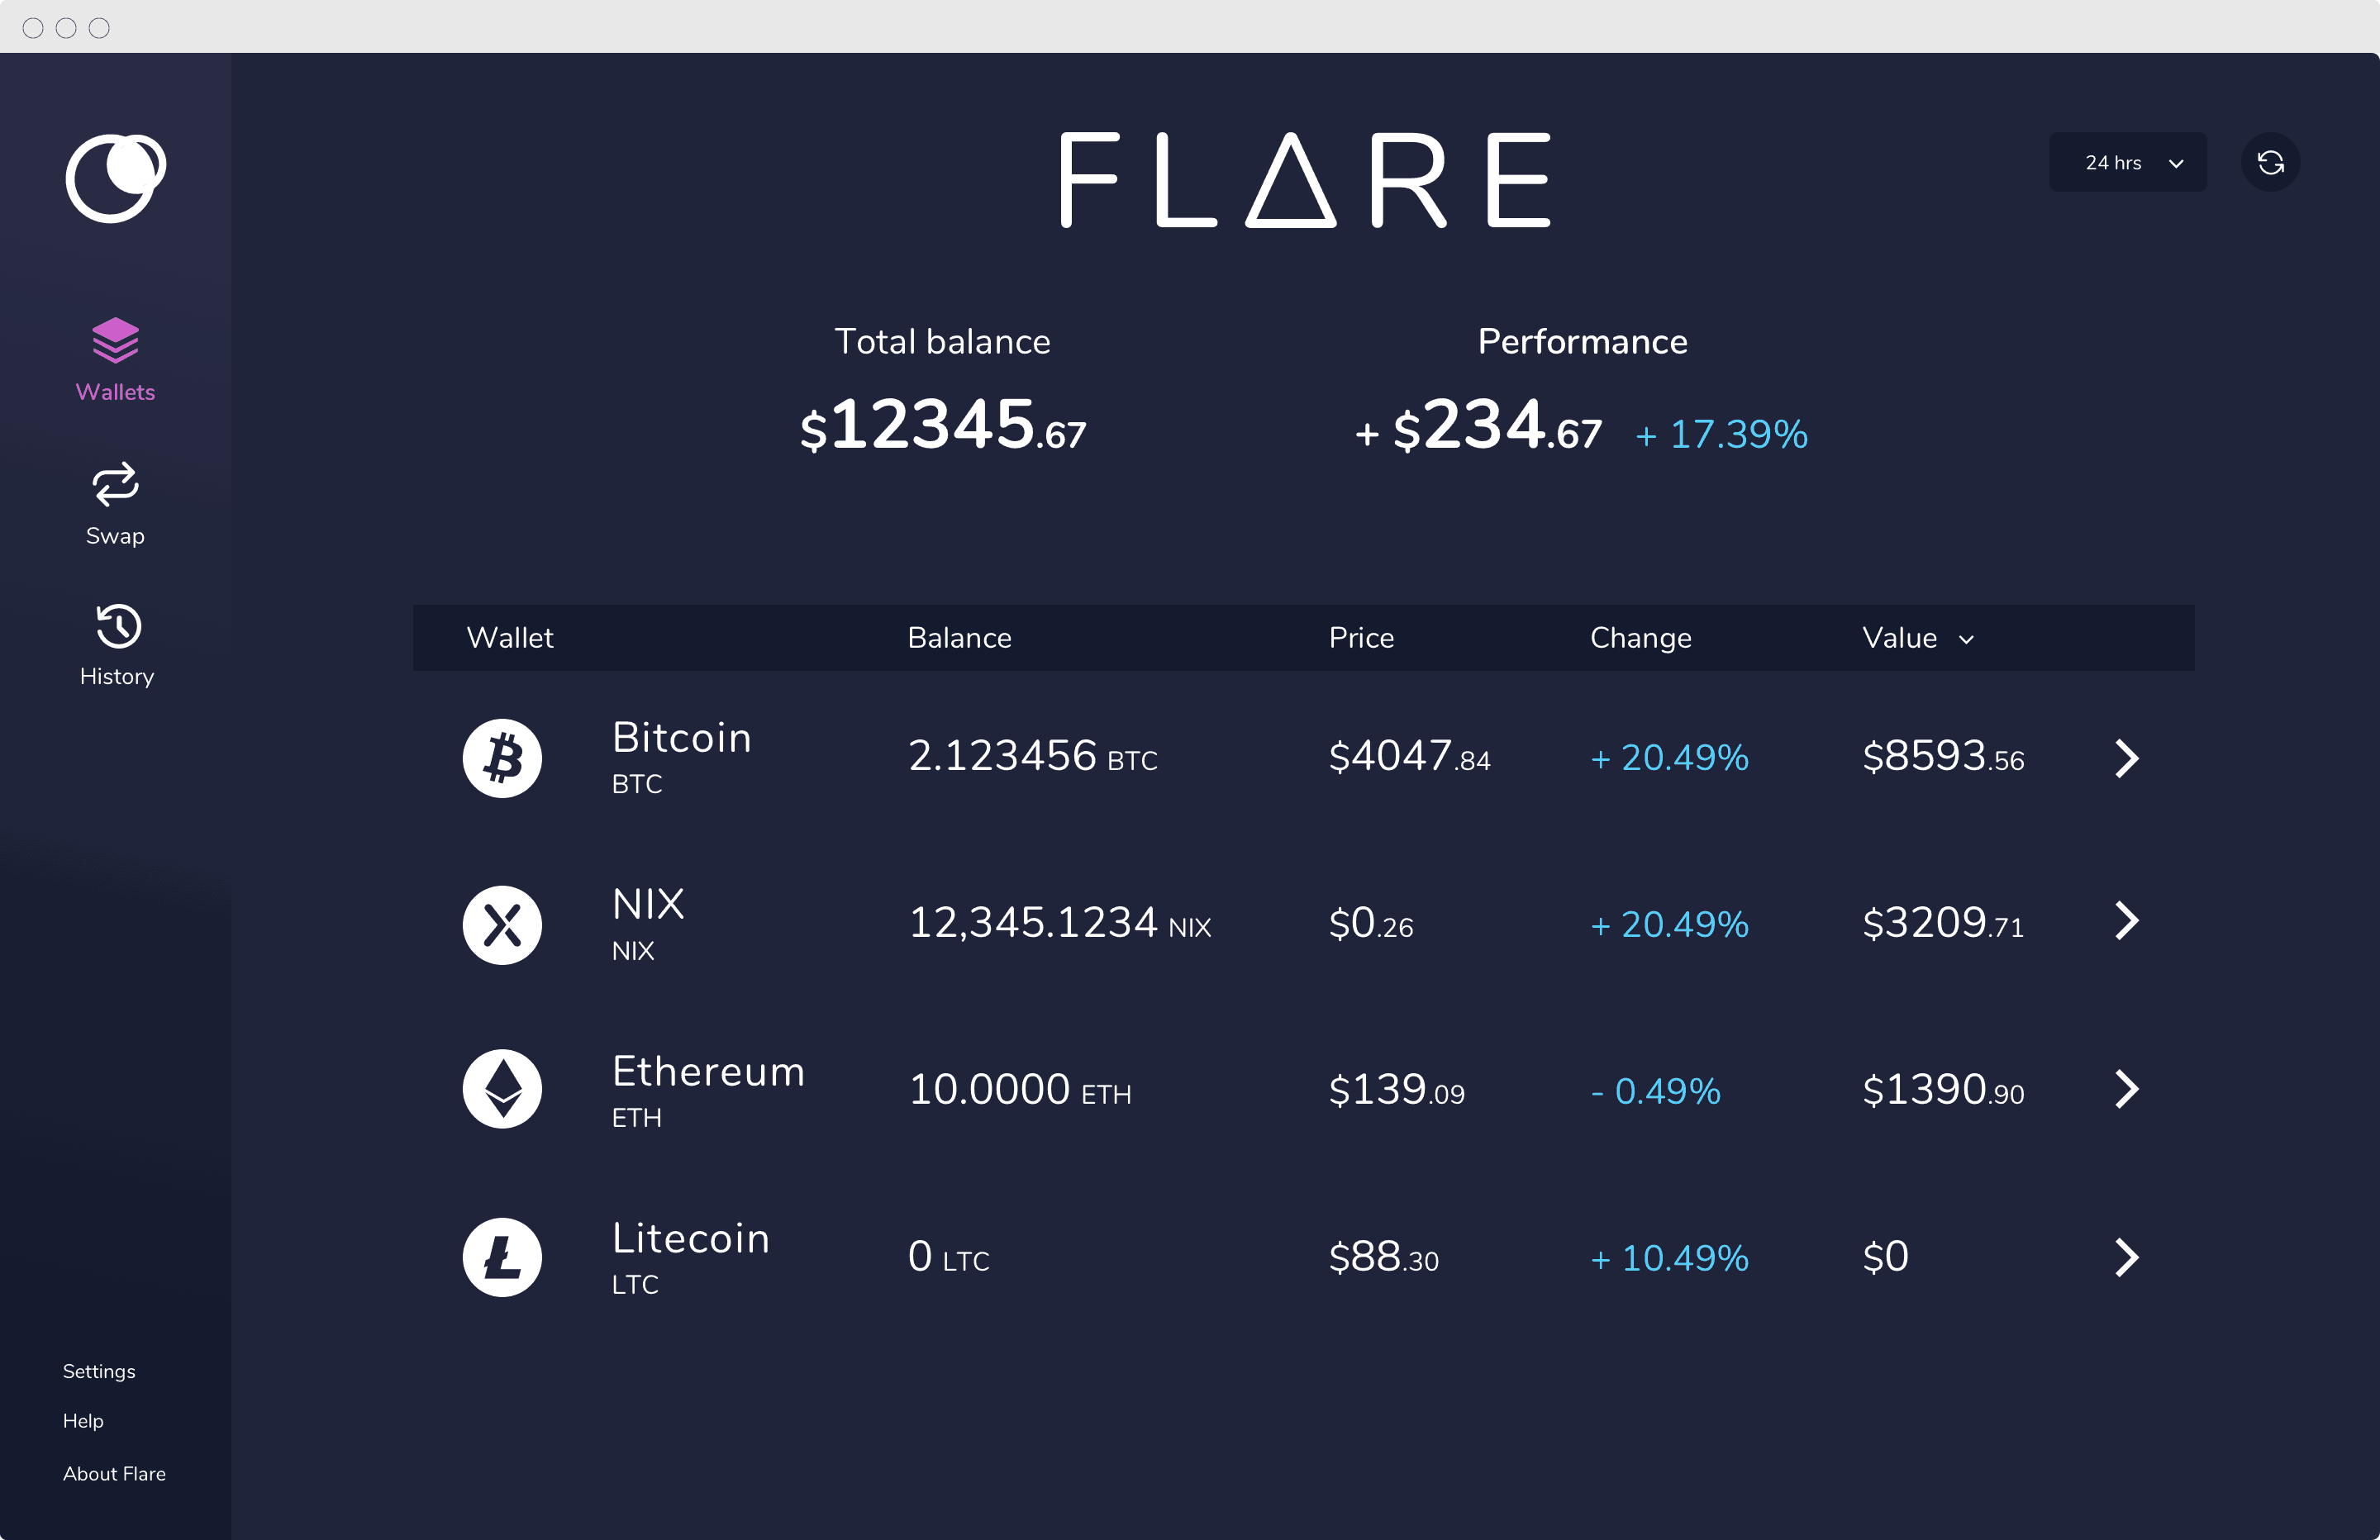 flare-dashboard-desktop.png